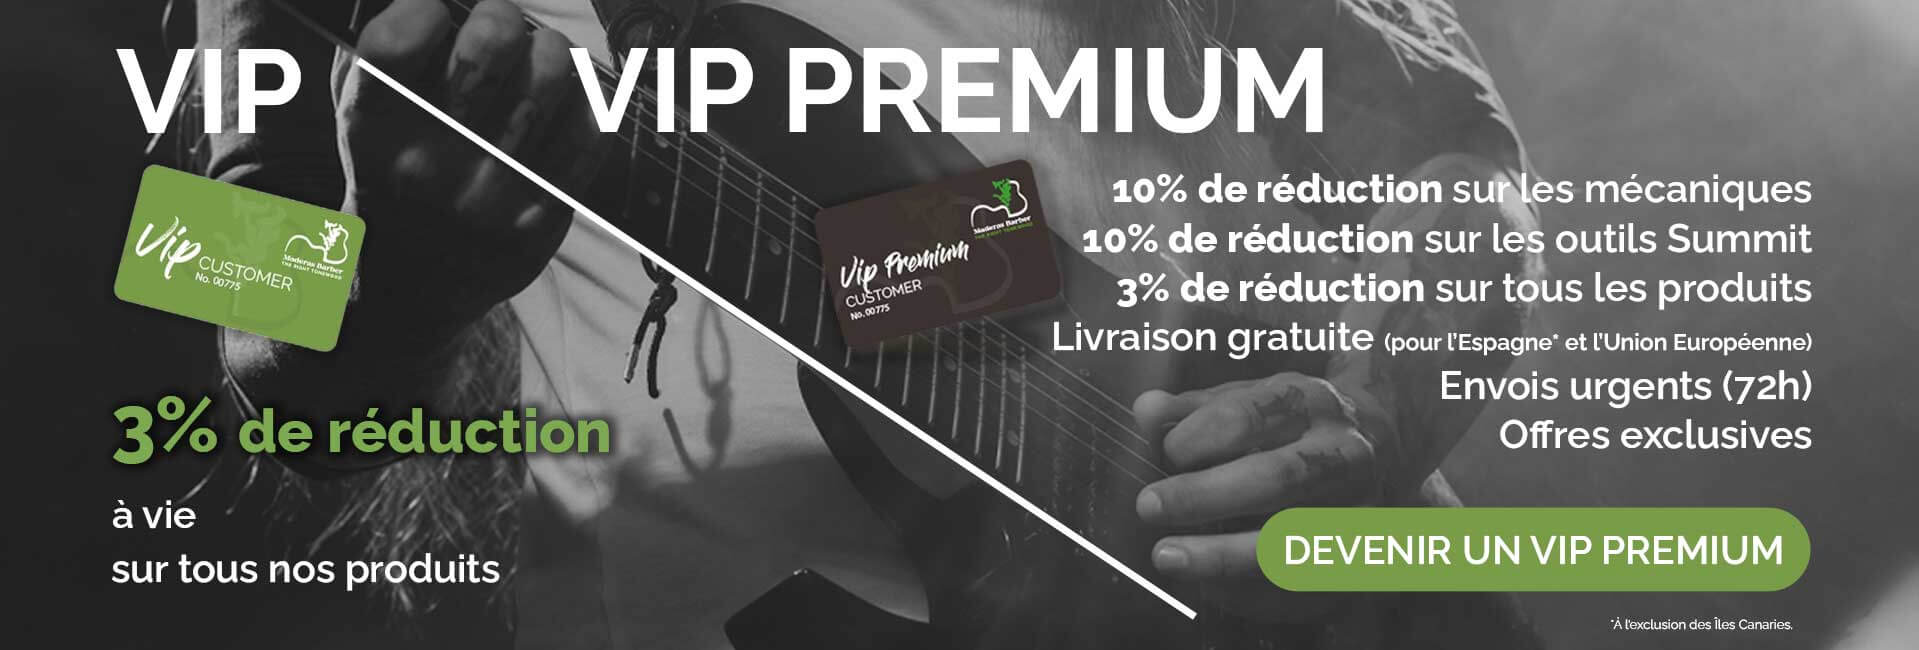 VIP Premium client